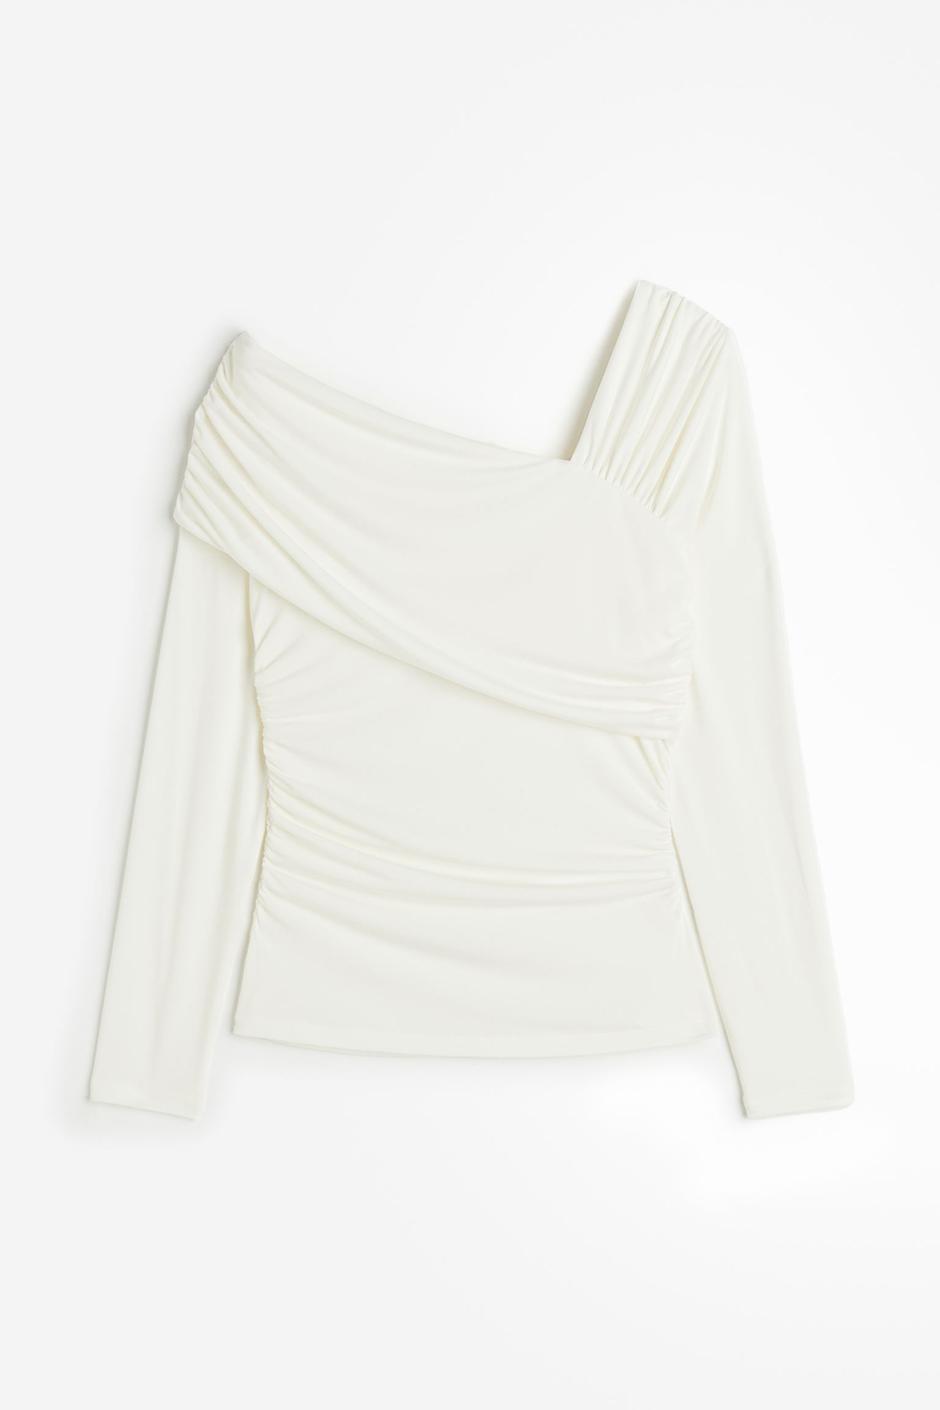 Foto: H&M, asimetrični bijeli top, 20,99 eura | Autor: H&M